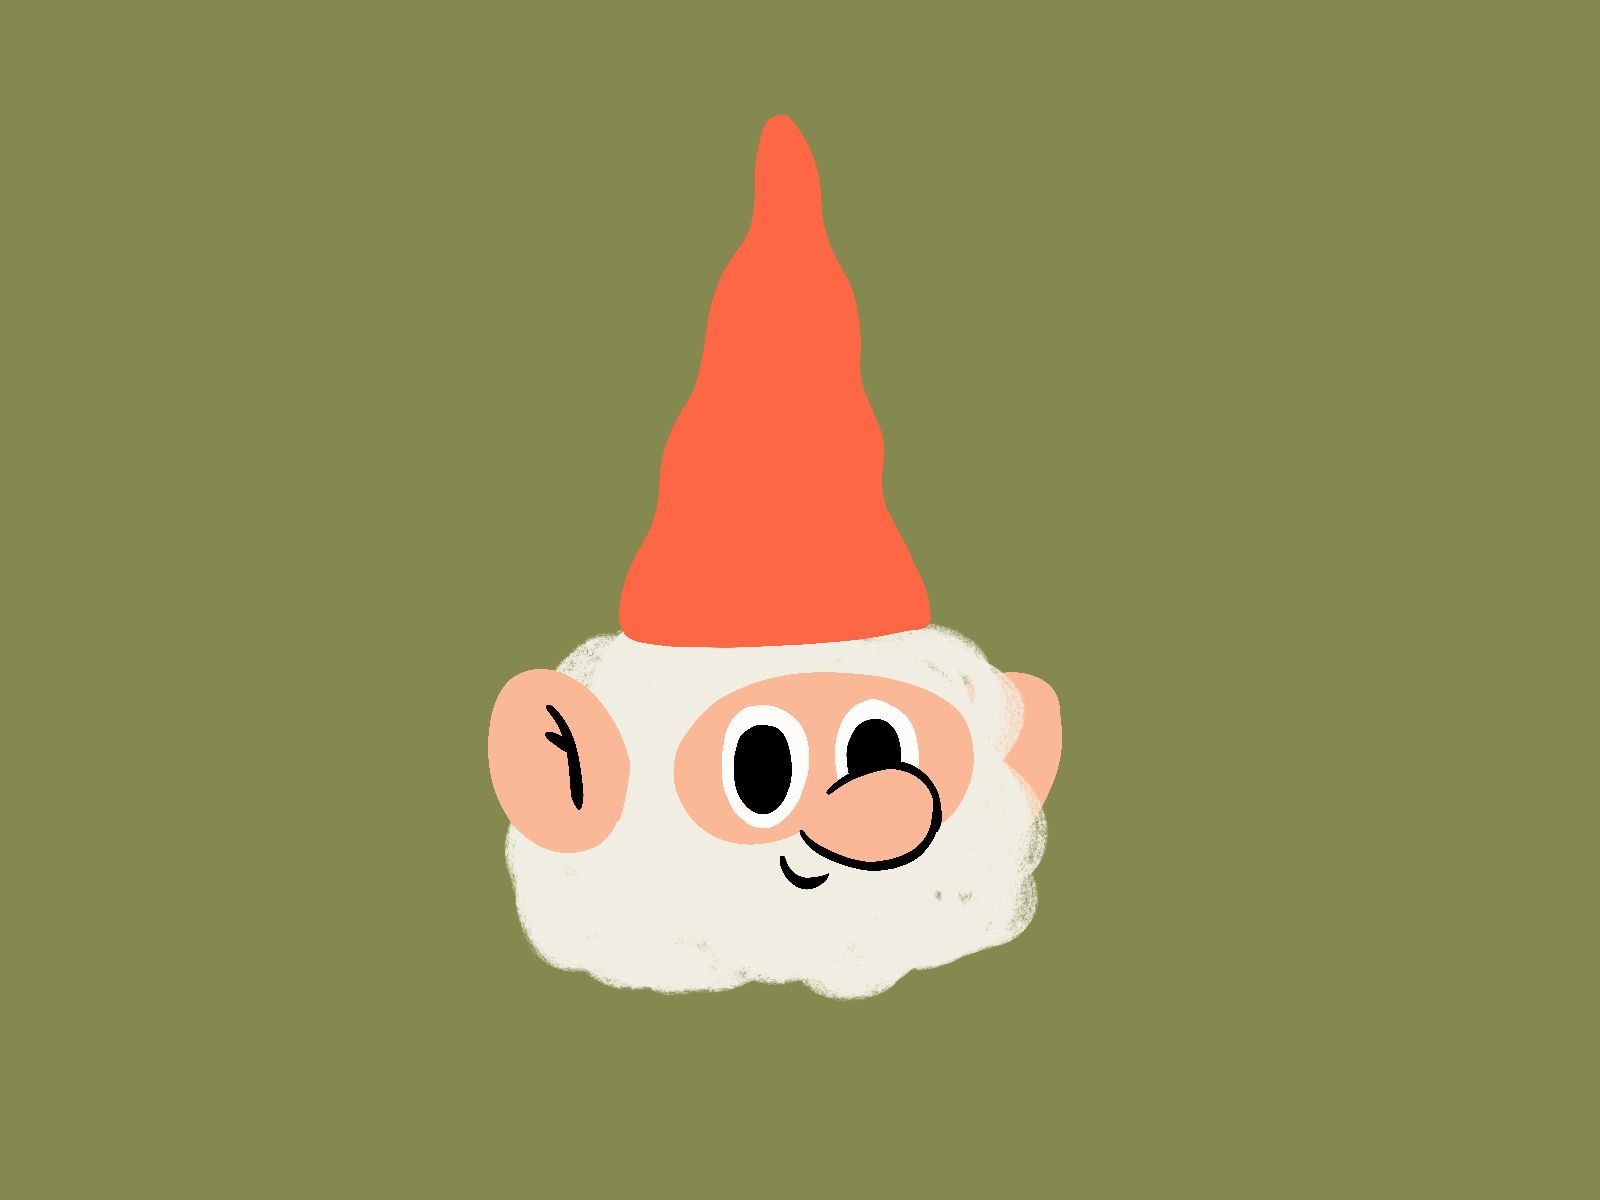 15. Gnome